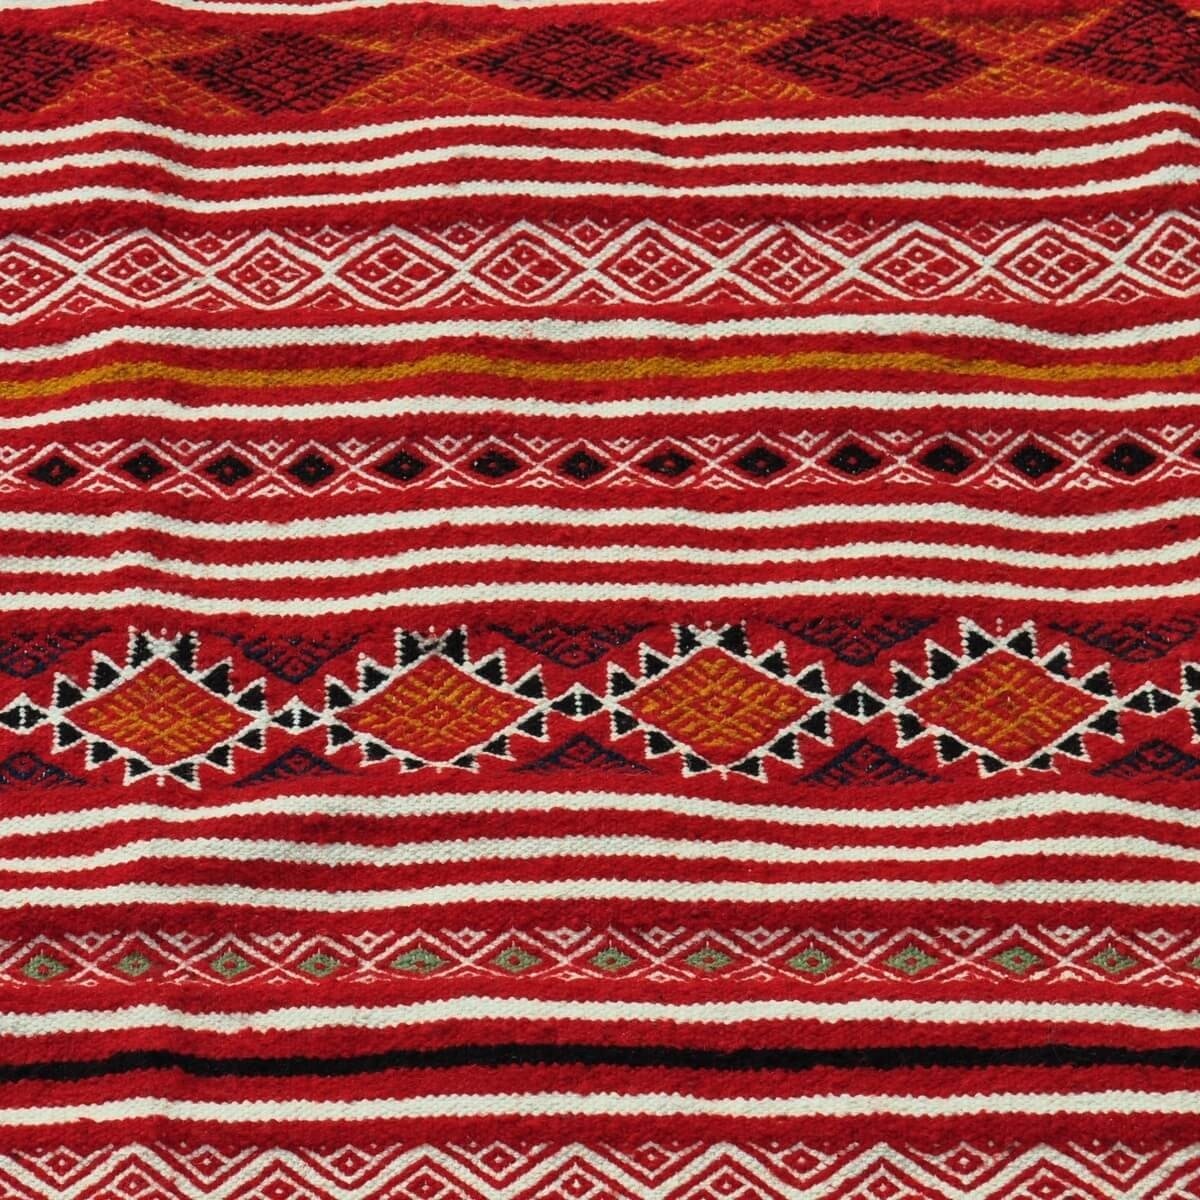 tappeto berbero Tappeto Kilim Driba 110x210 Rosso/Arancione (Fatto a mano, Lana, Tunisia) Tappeto kilim tunisino, in stile maroc